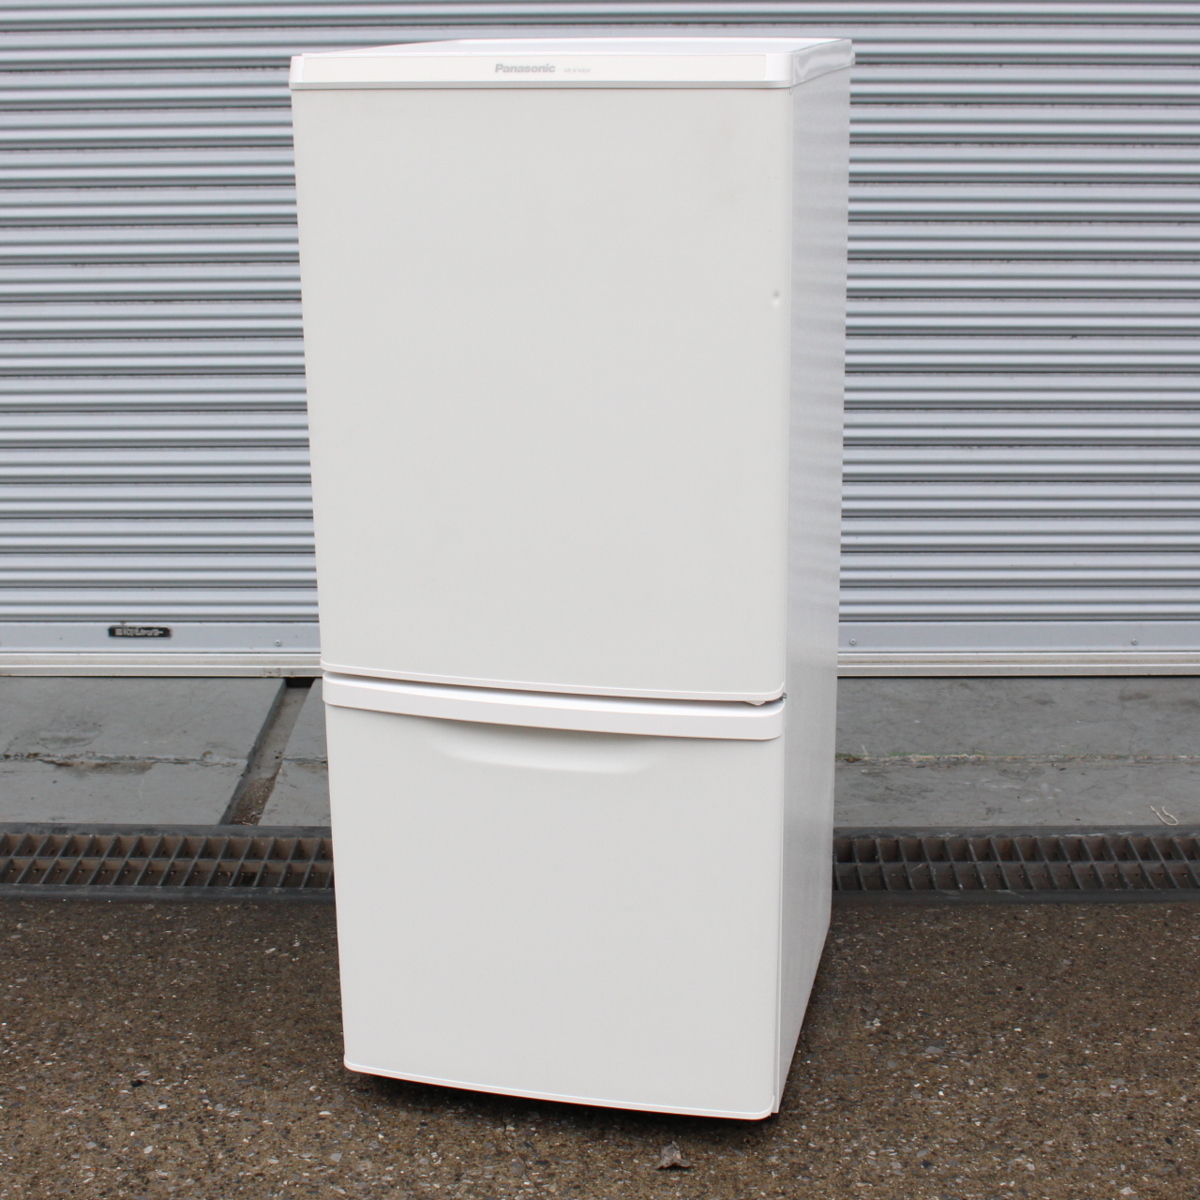 川崎市幸区にて パナソニック 冷蔵庫 NR-B14BW-W 2019年製 を出張買取させて頂きました。